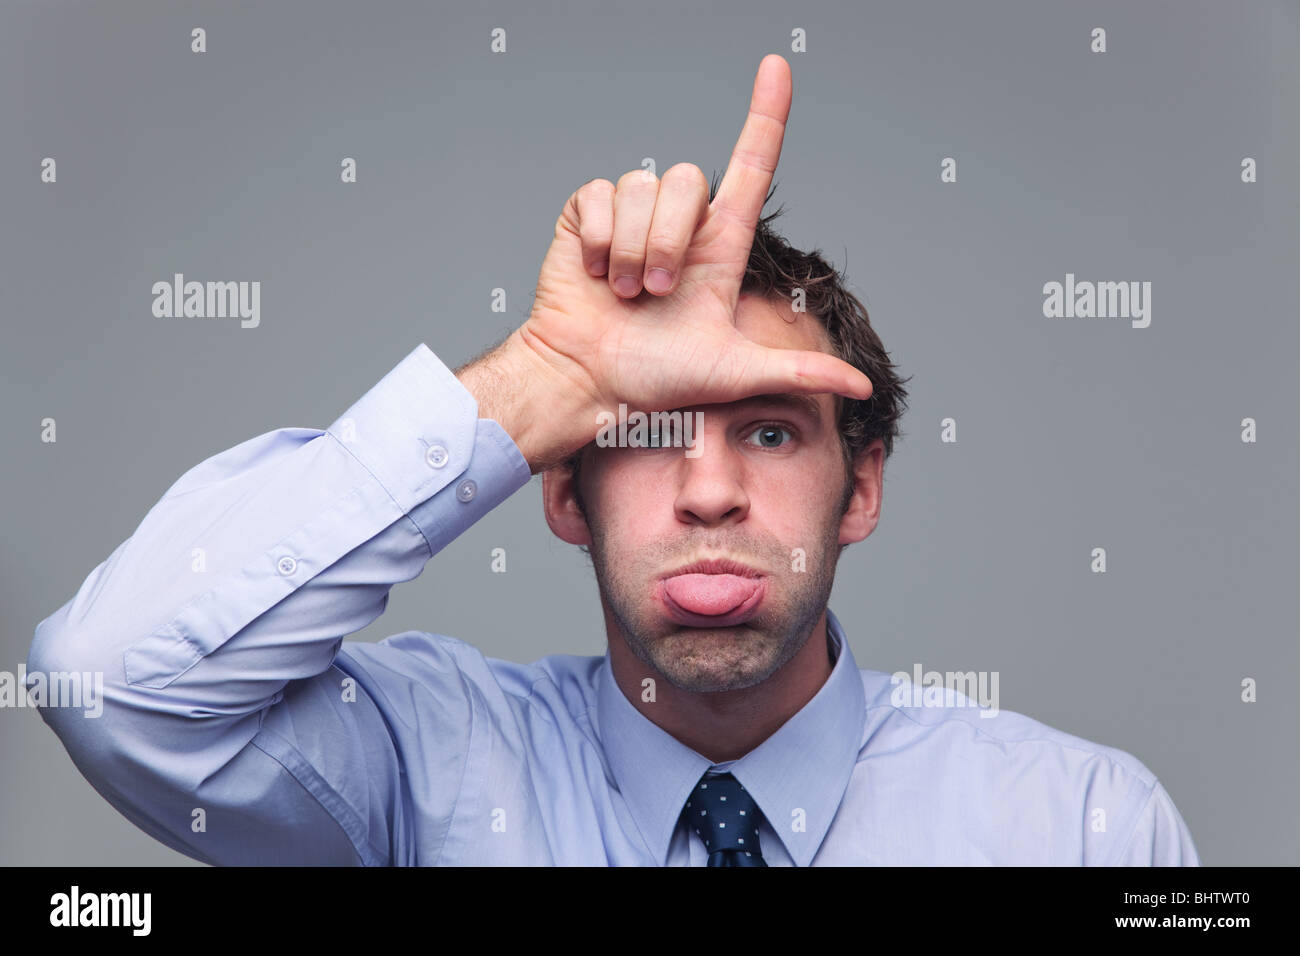 Hombre en camisa y corbata introduciendo su lengua y hacer la letra L con su mano conocido como el gesto de mano para perdedor Foto de stock